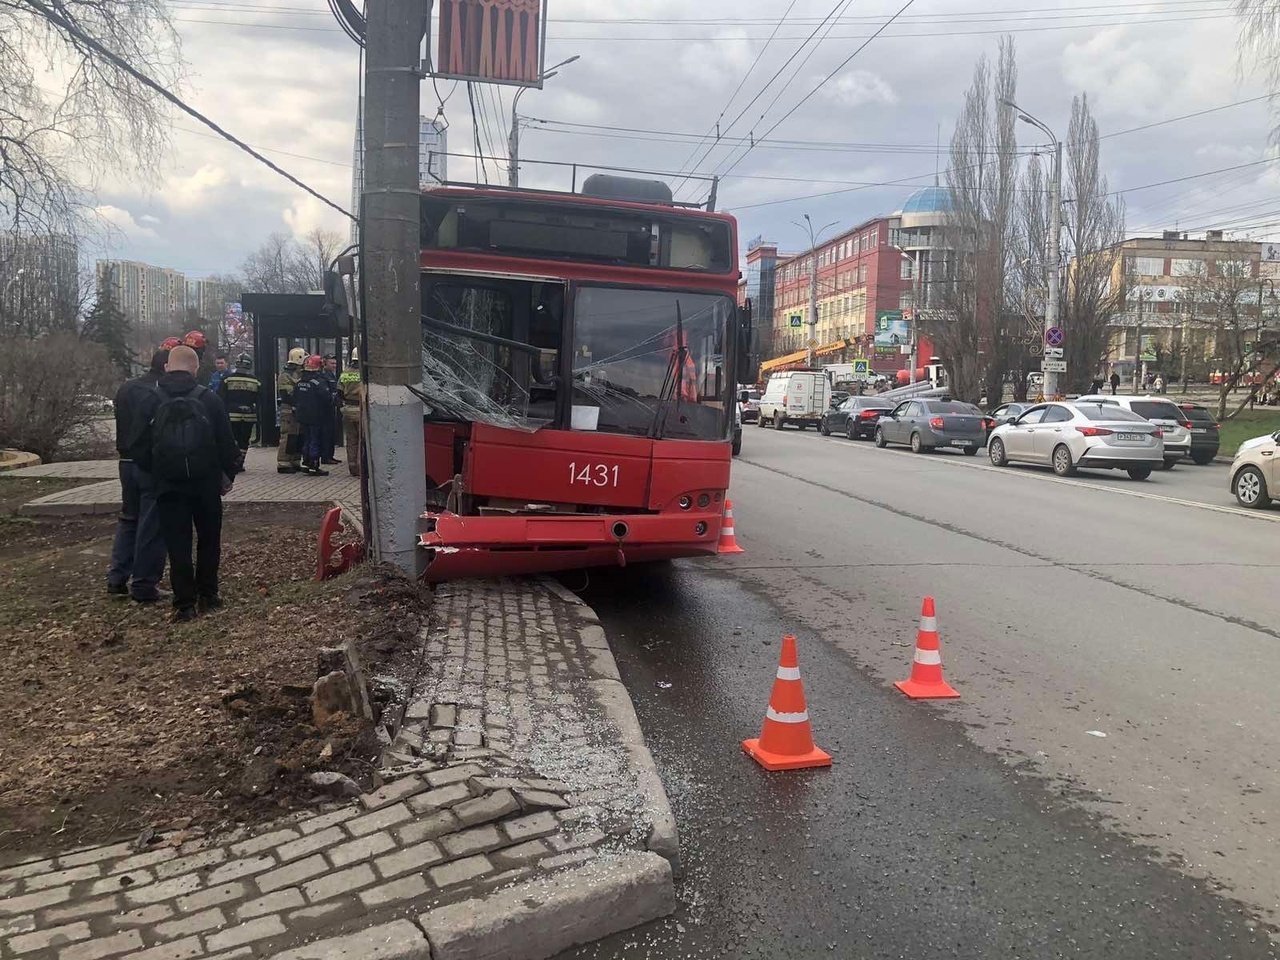 Четверо пассажиров пострадали при ДТП с троллейбусом в Ижевске